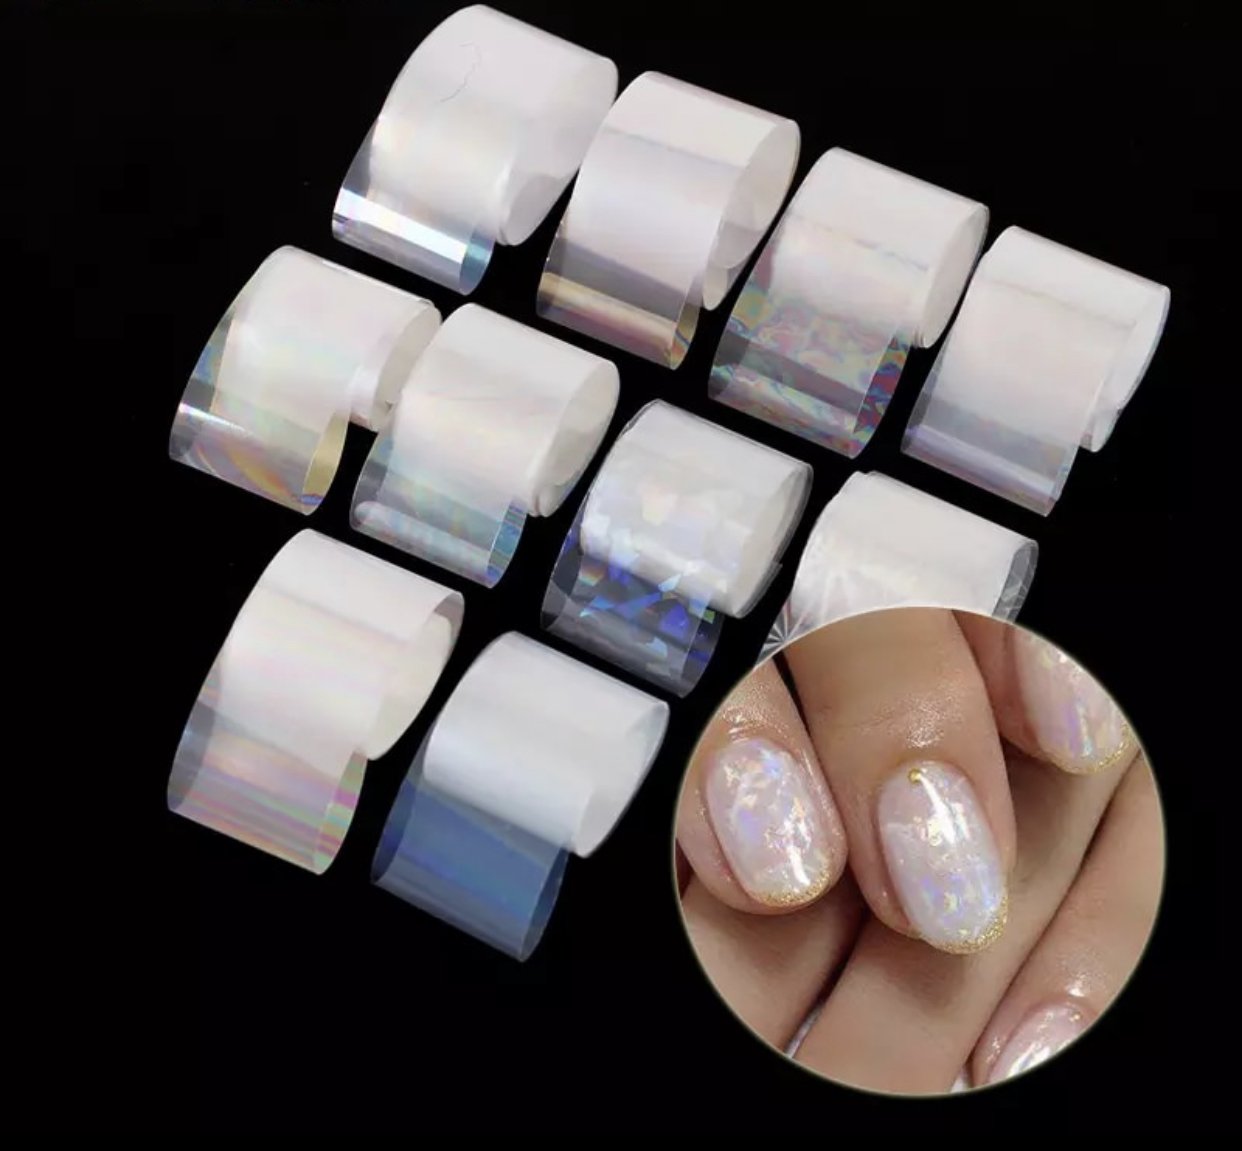 Foil liso para decoración de uñas - Distri Nails - Insumos para uñas